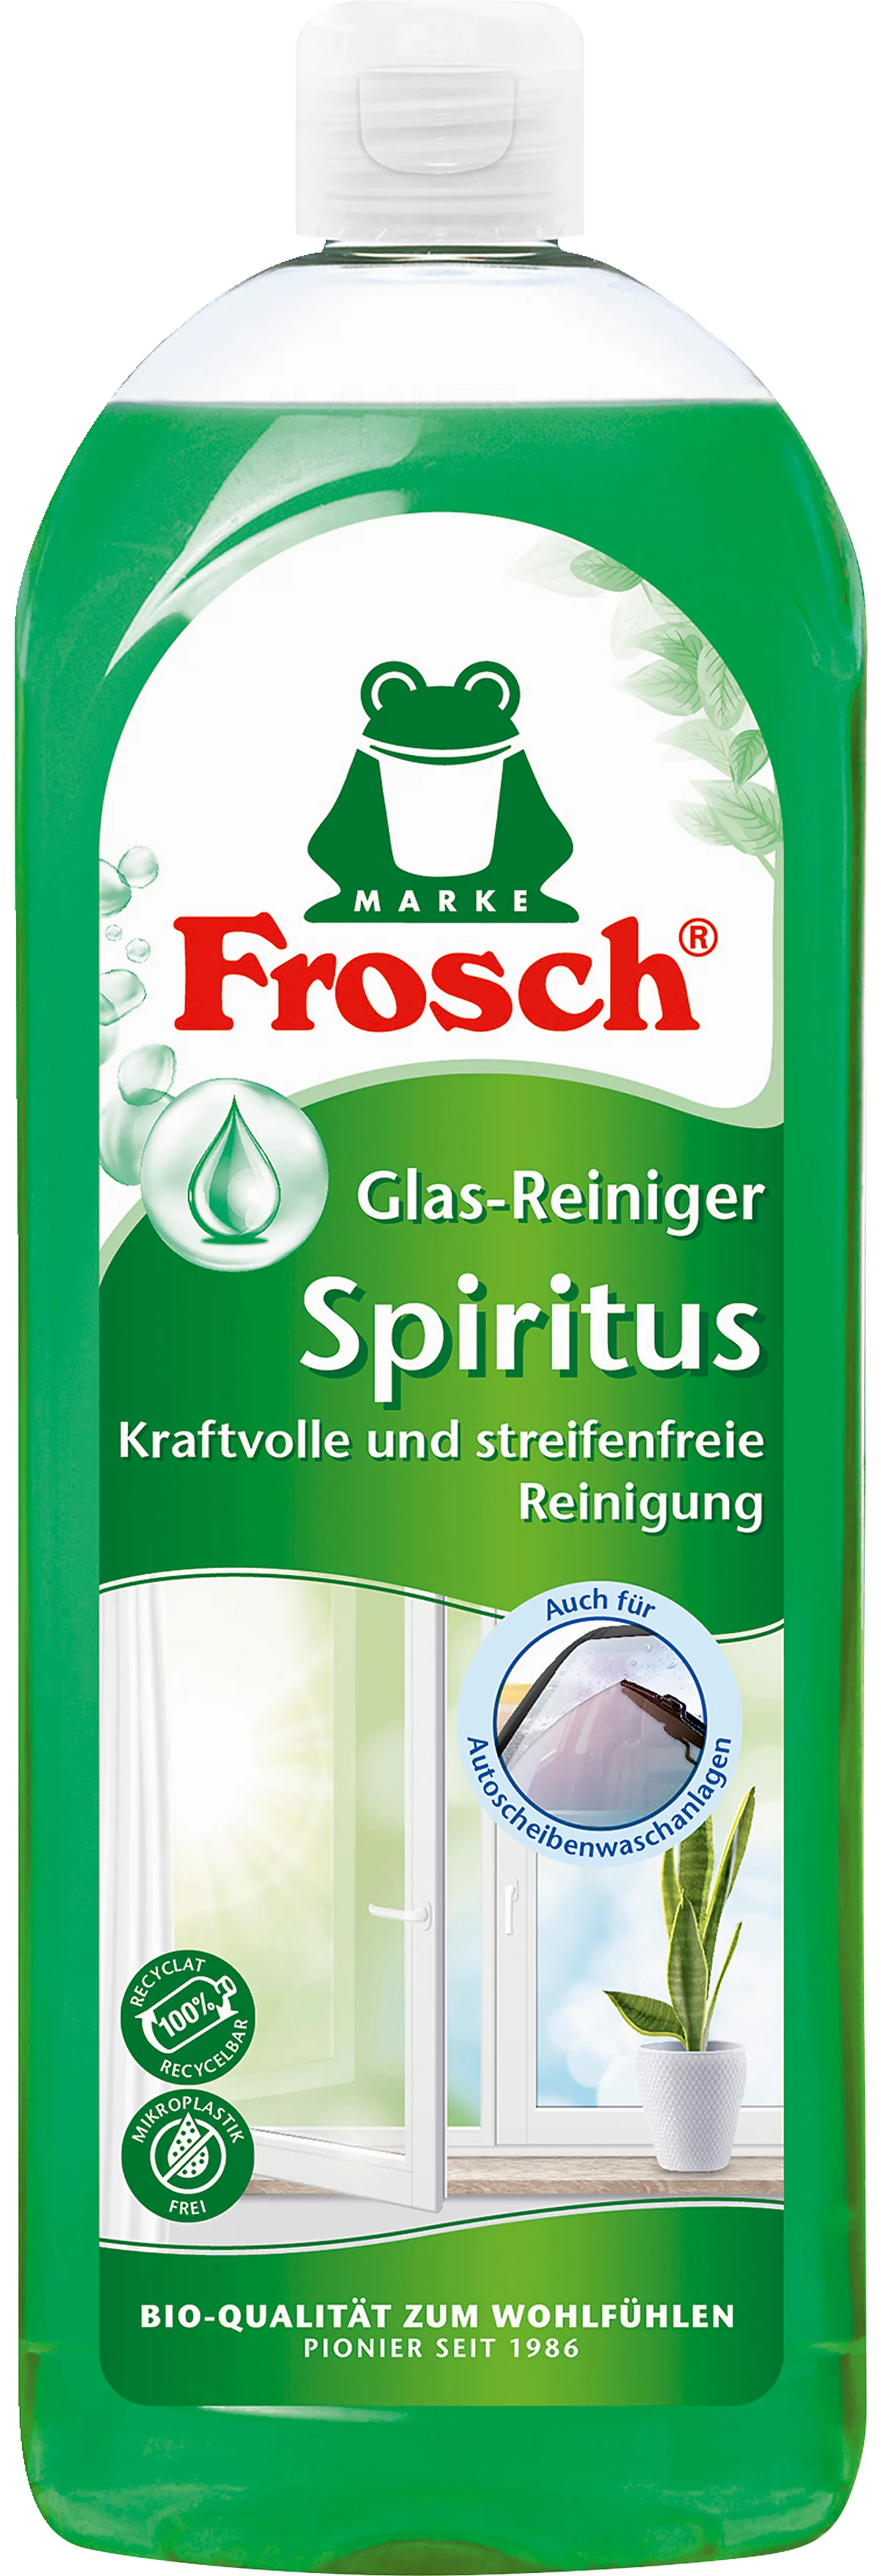 Frosch Glasreiniger Spiritus, 750 ml Flasche